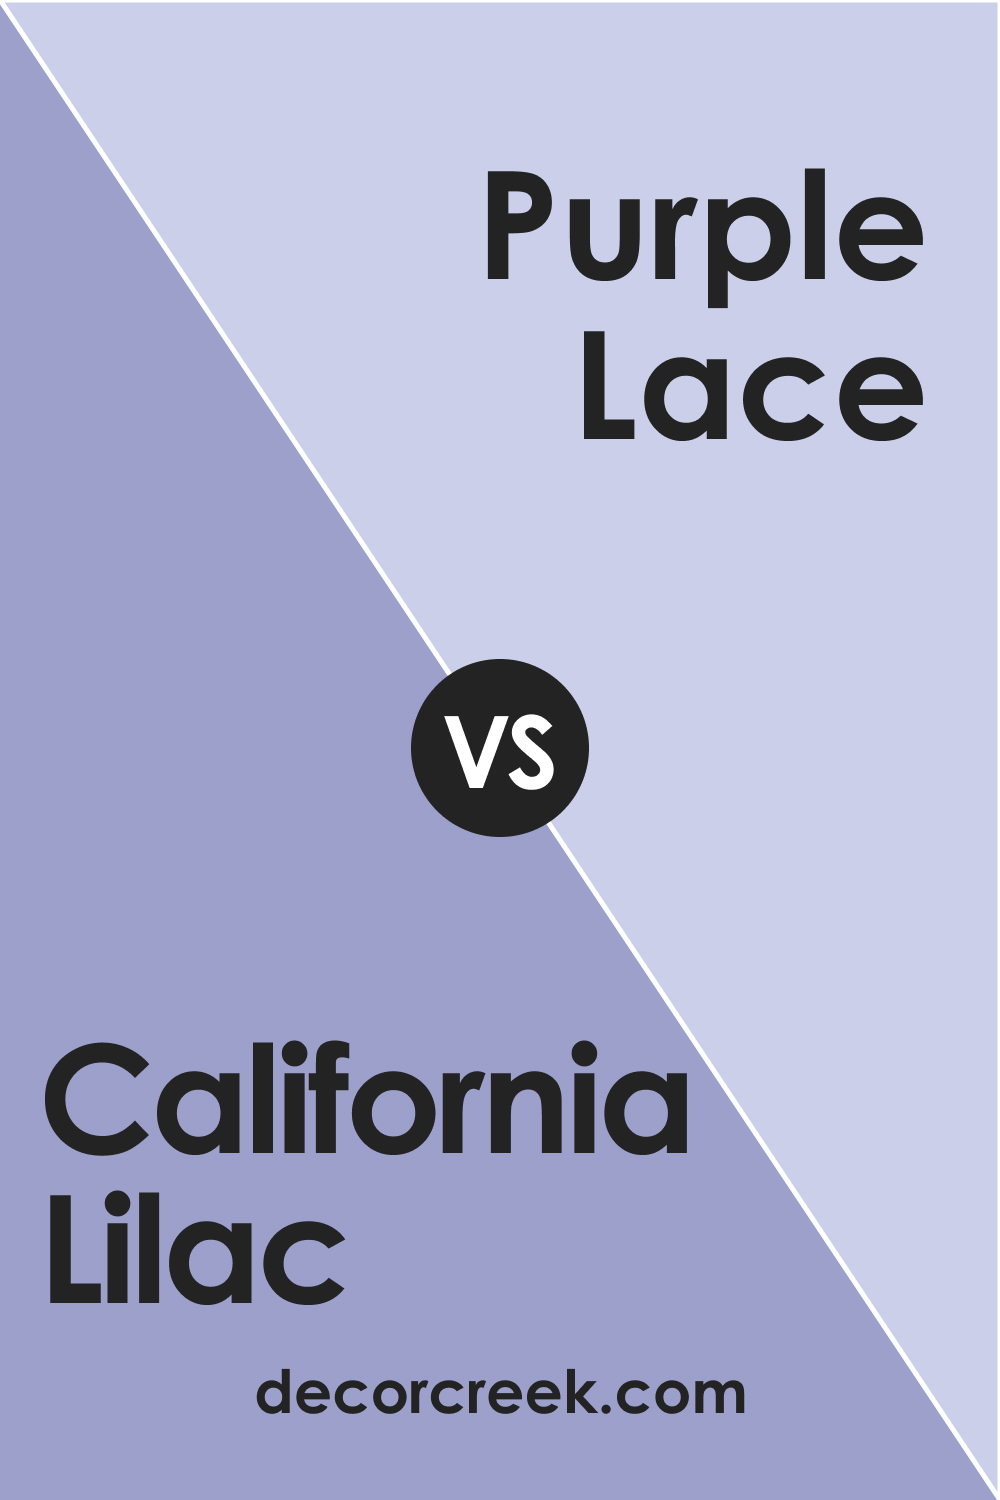 California Lilac 2068-40 vs. BM 2068-60 Purple Lace